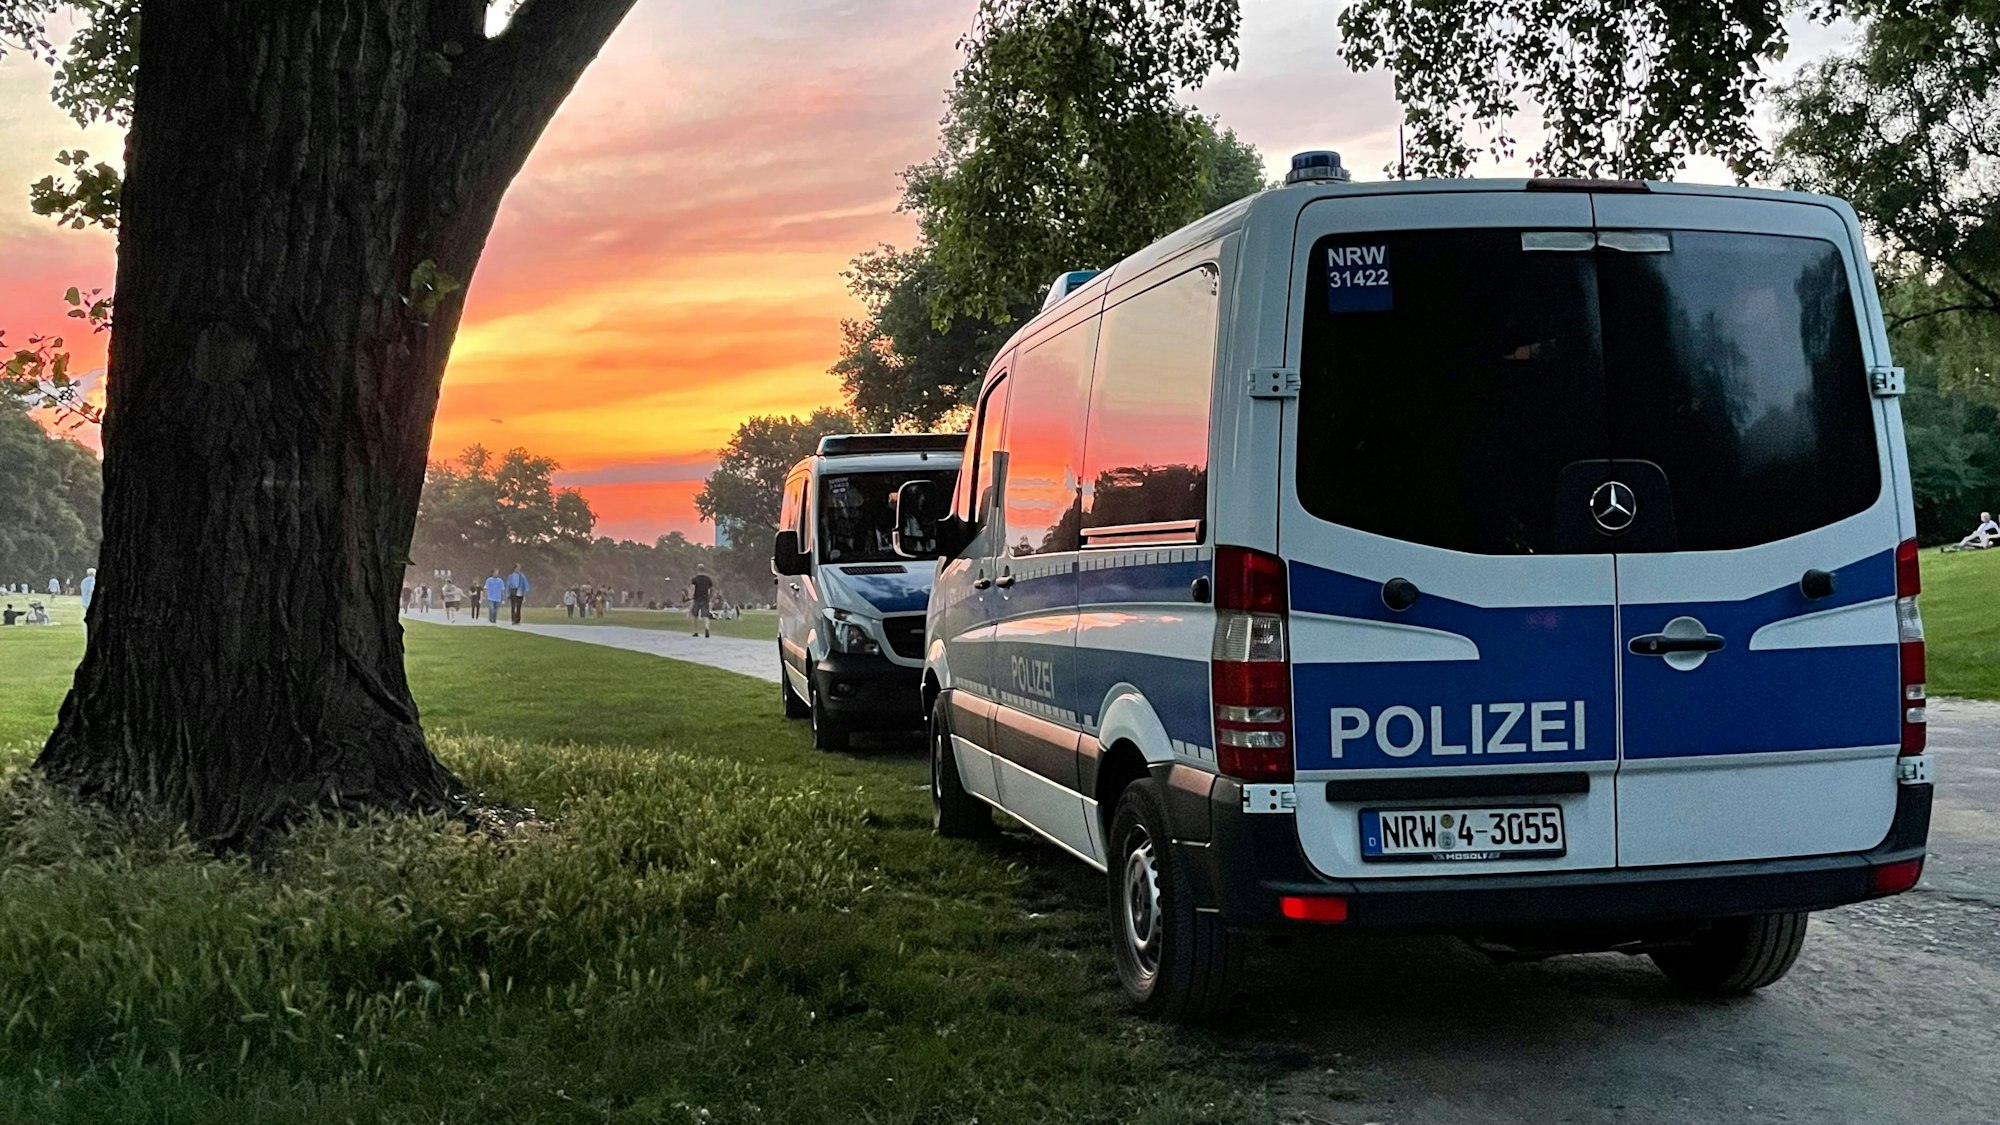 Polizei-Autos vor dem Sonnenuntergang am Aachener Weiher in Köln.